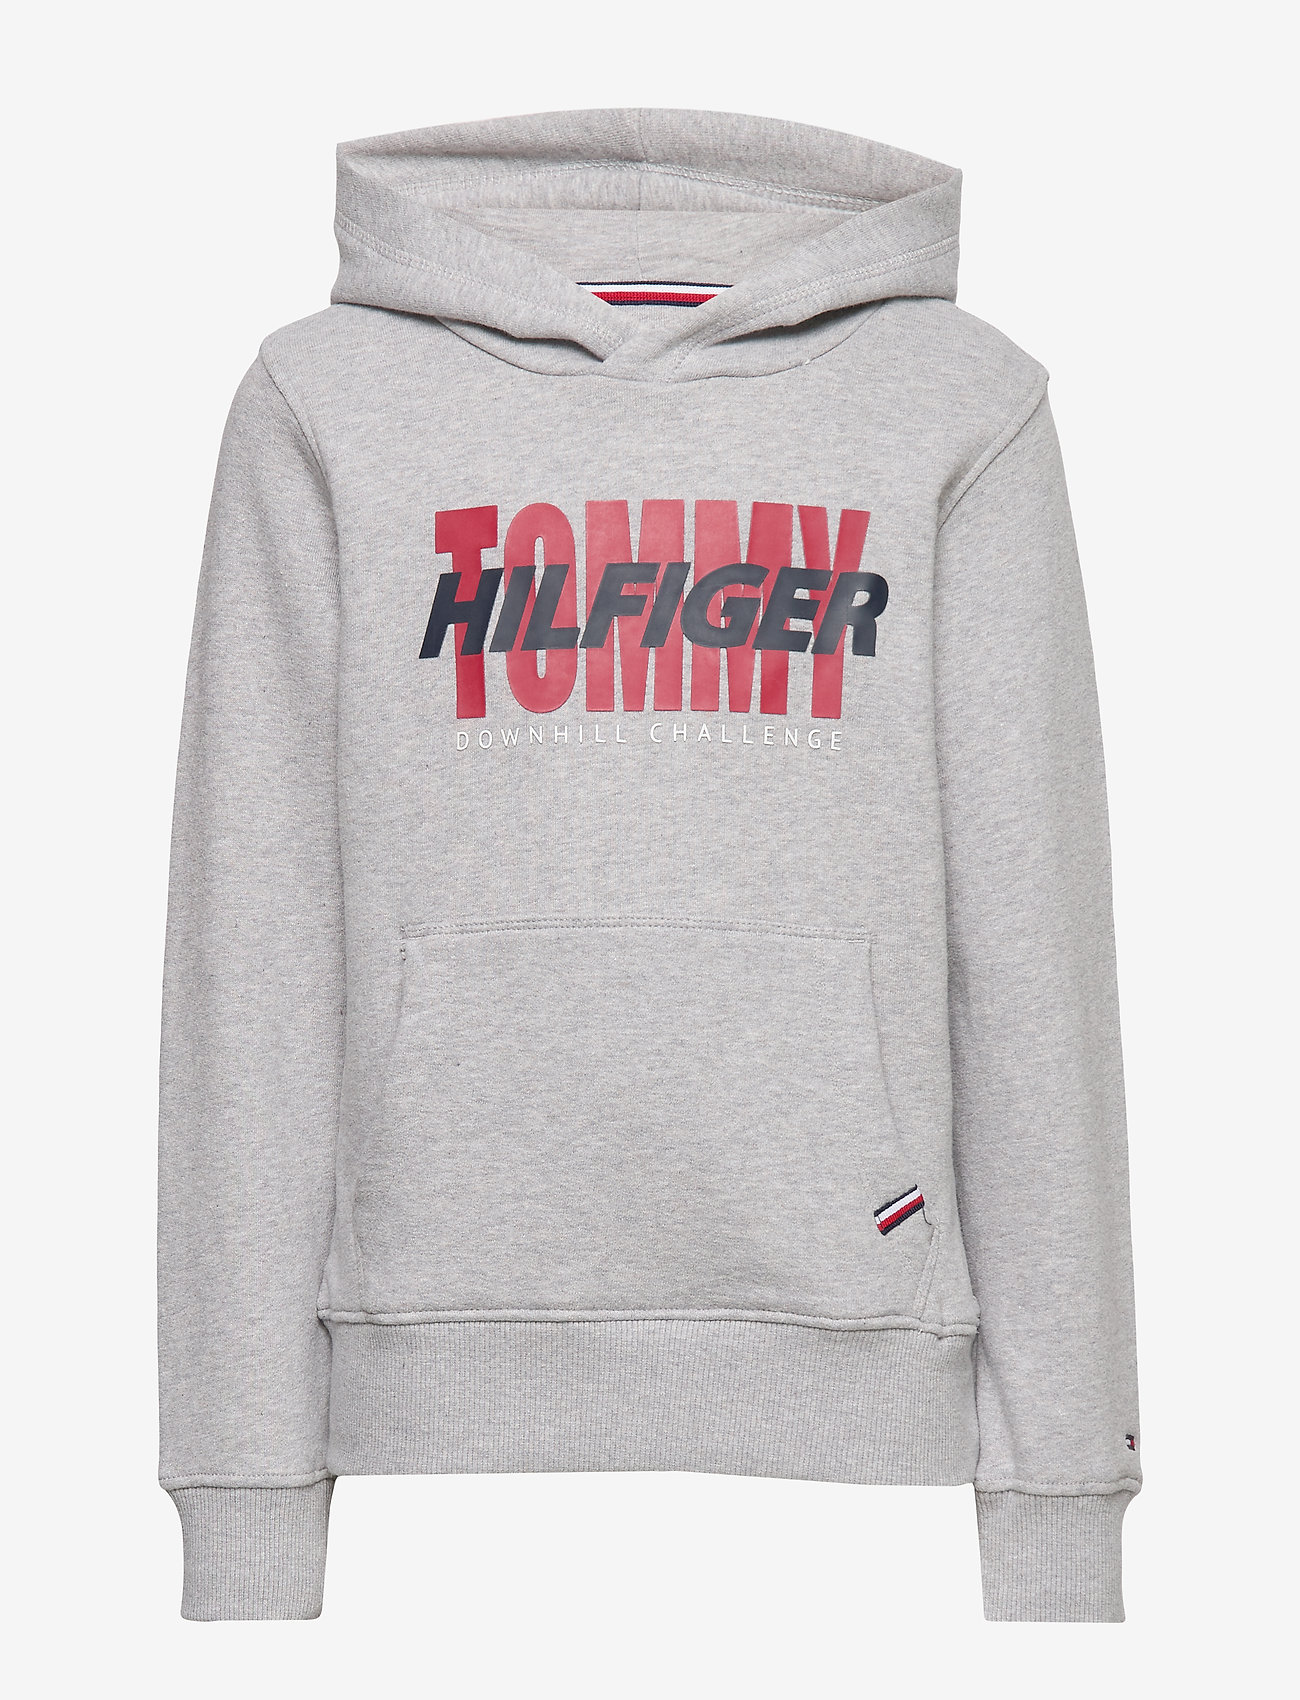 grey tommy hilfiger hoodie